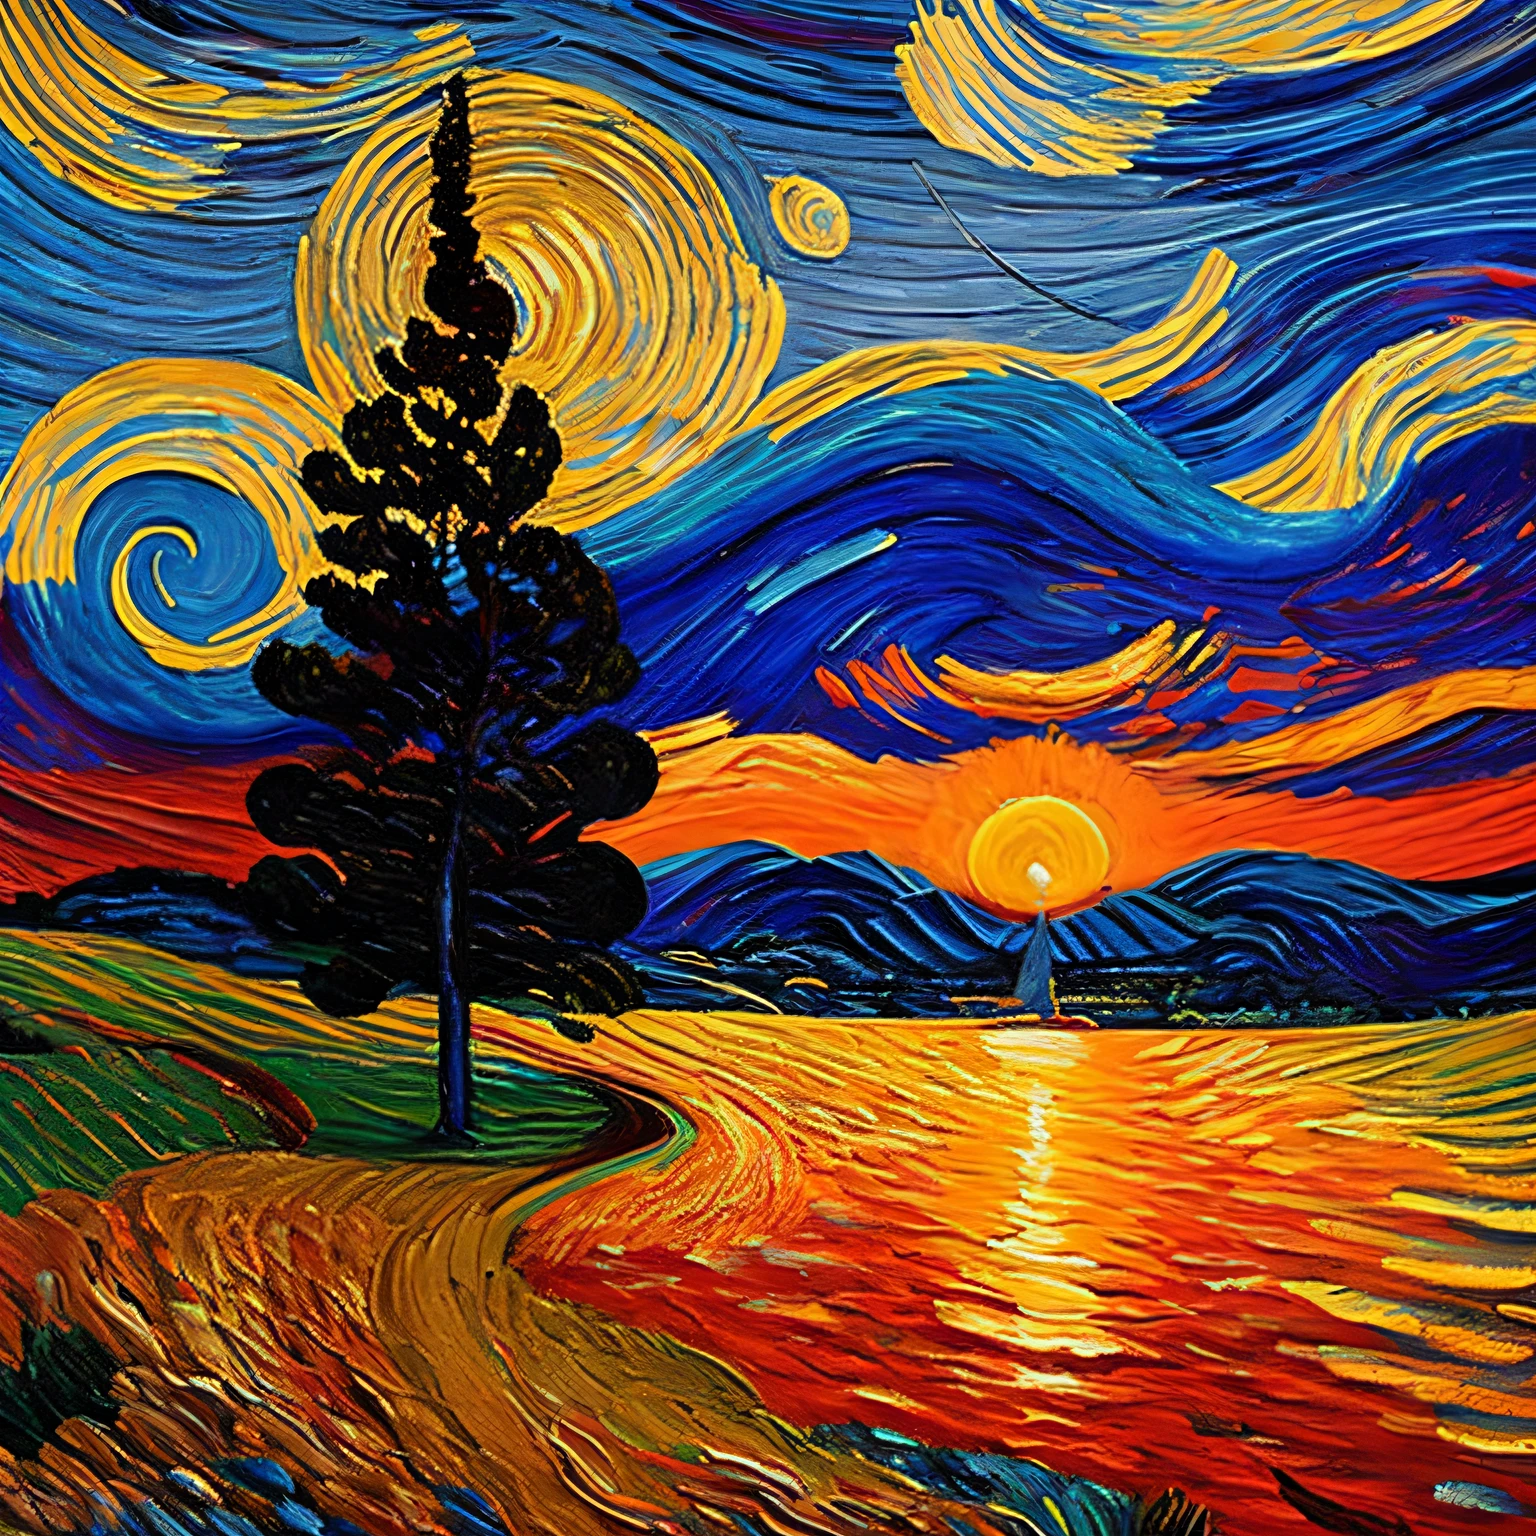 Dans un monde réimaginé par les traits de Van Gogh, les tourbillons et les remous familiers de "nuit étoilée" subir une transformation à couper le souffle. Au lieu des bleus tranquilles et des jaunes lumineux représentant un ciel nocturne, Une palette vive d’oranges profonds, rouges ardents, et des violets doux peignent la toile. La scène capture l’instant brillant et transitoire d’un soleil couchant.

Les tourbillons célestes, autrefois rempli d’étoiles scintillantes, berce maintenant le soleil couchant, son orbe de feu descendant lentement, projetant une lueur rayonnante qui danse et se mêle aux tourbillons de couleurs environnants. Les cyprès, s’élevant toujours vers le haut dans leurs silhouettes sombres, semblent s’étirer encore plus haut, comme s’il essayait de s’accrocher aux derniers vestiges de la lumière du jour.

Dans la ville ci-dessous, le chaud, La lumière ambrée du coucher du soleil baigne les bâtiments pittoresques, projetant des ombres allongées et transformant la ville en un havre de teintes dorées. Le clocher de l’église, Une sentinelle autrefois solitaire contre la nuit, now stands outlined by the sun's Passionate embrace, sa structure prenant un aspect doux, Qualité presque éthérée.

Chaque coup de pinceau, avec son intensité vive, transmet la réponse émotionnelle de l’artiste à ce quotidien, spectacle pourtant miraculeux. Ce n’est pas seulement un coucher de soleil; c’est le coucher de soleil de Van Gogh, Un chef-d’œuvre tourbillonnant de chaleur, Passion, et un moment fugace dans le temps, Capturé à jamais sur la toile.